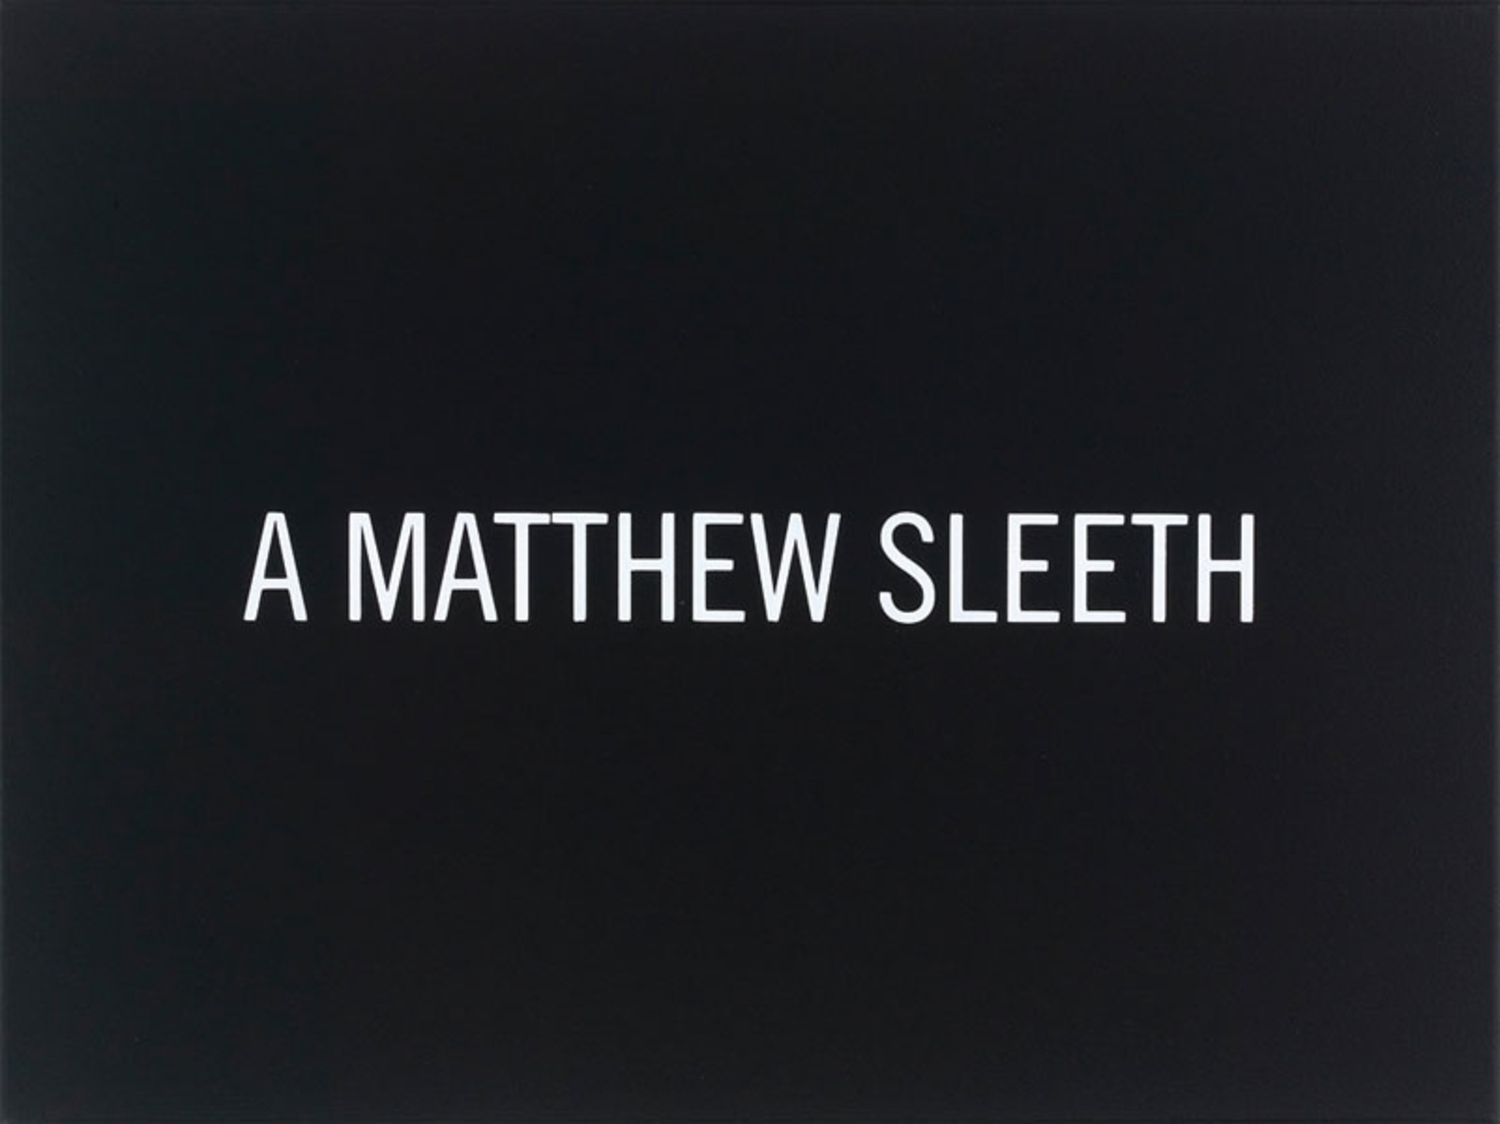 White Box: A Matthew Sleeth